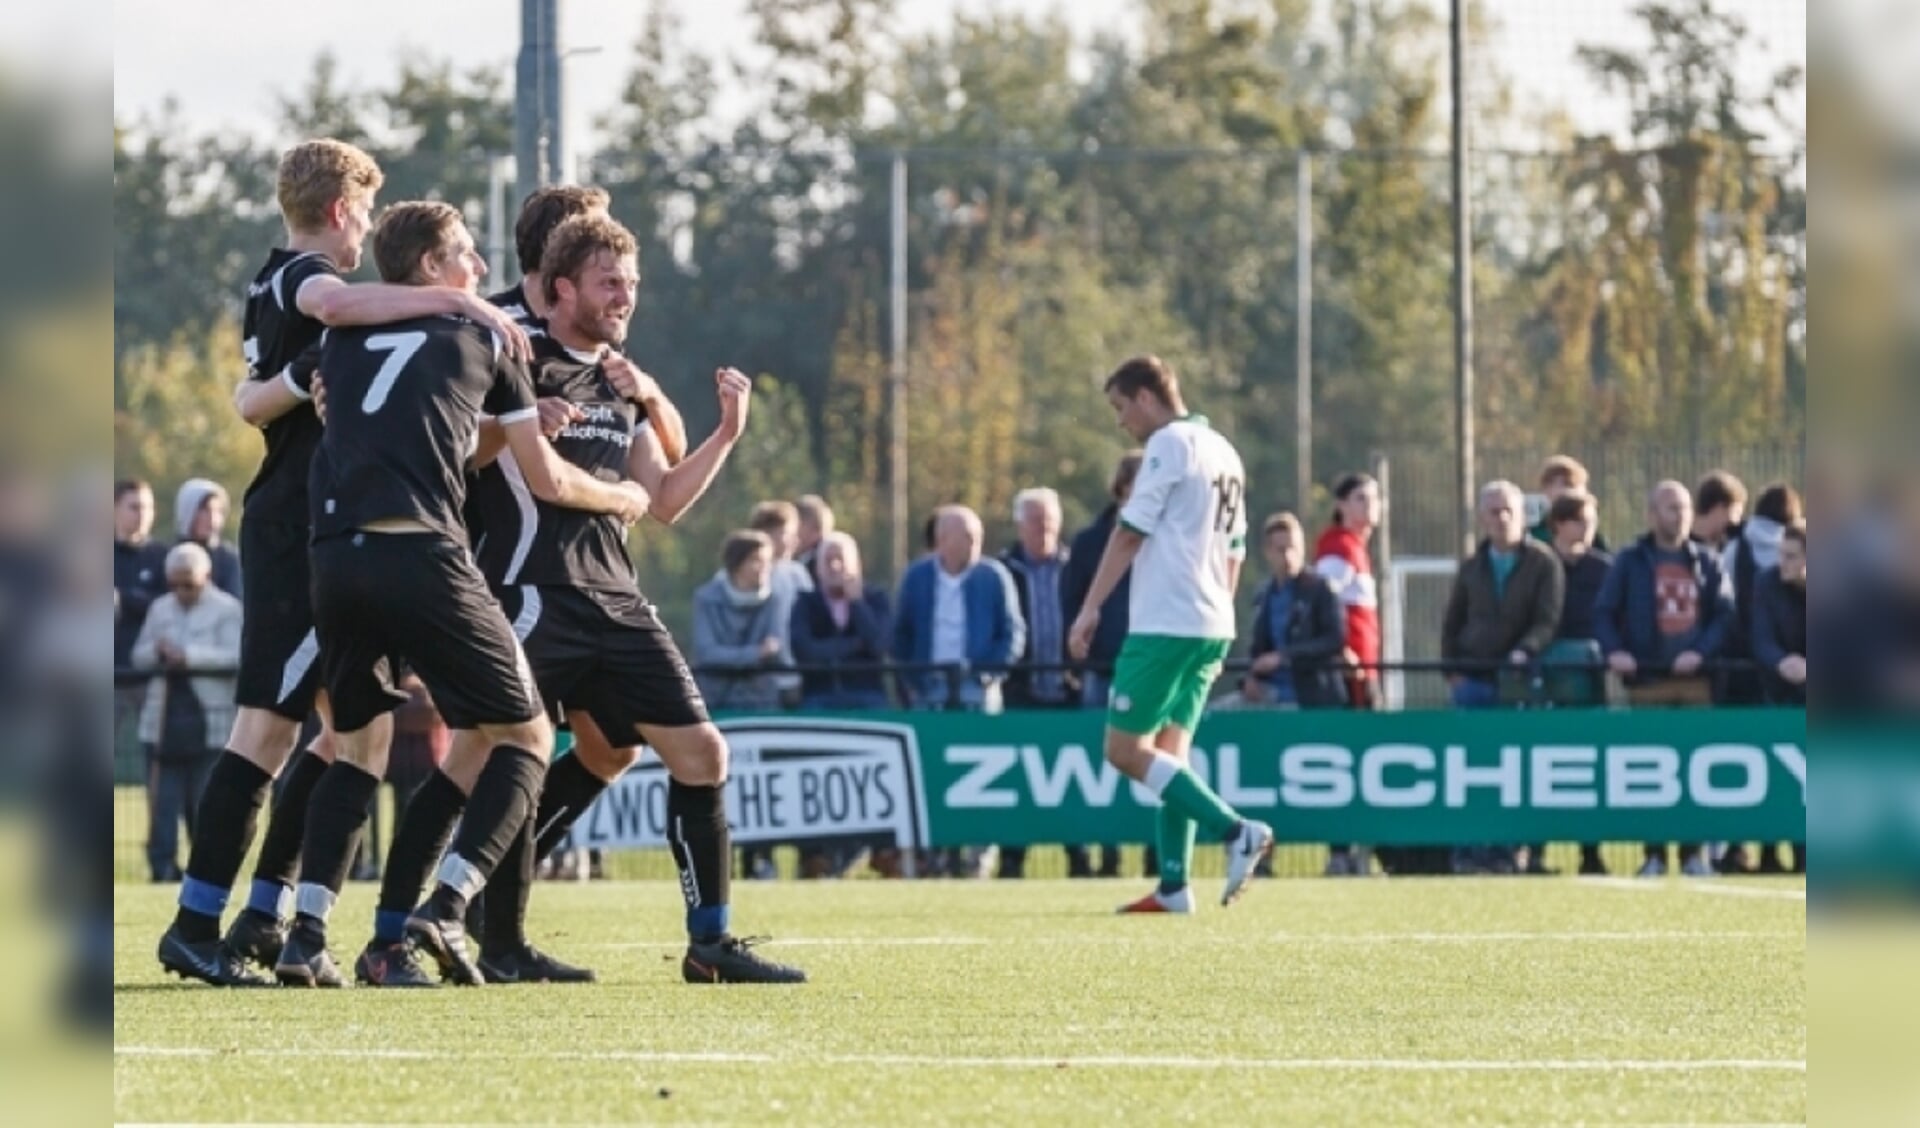  Lex Heimerikx vorig seizoen als de gevierde man bij ZAC na een doelpunt tegen Zwolsche Boys.